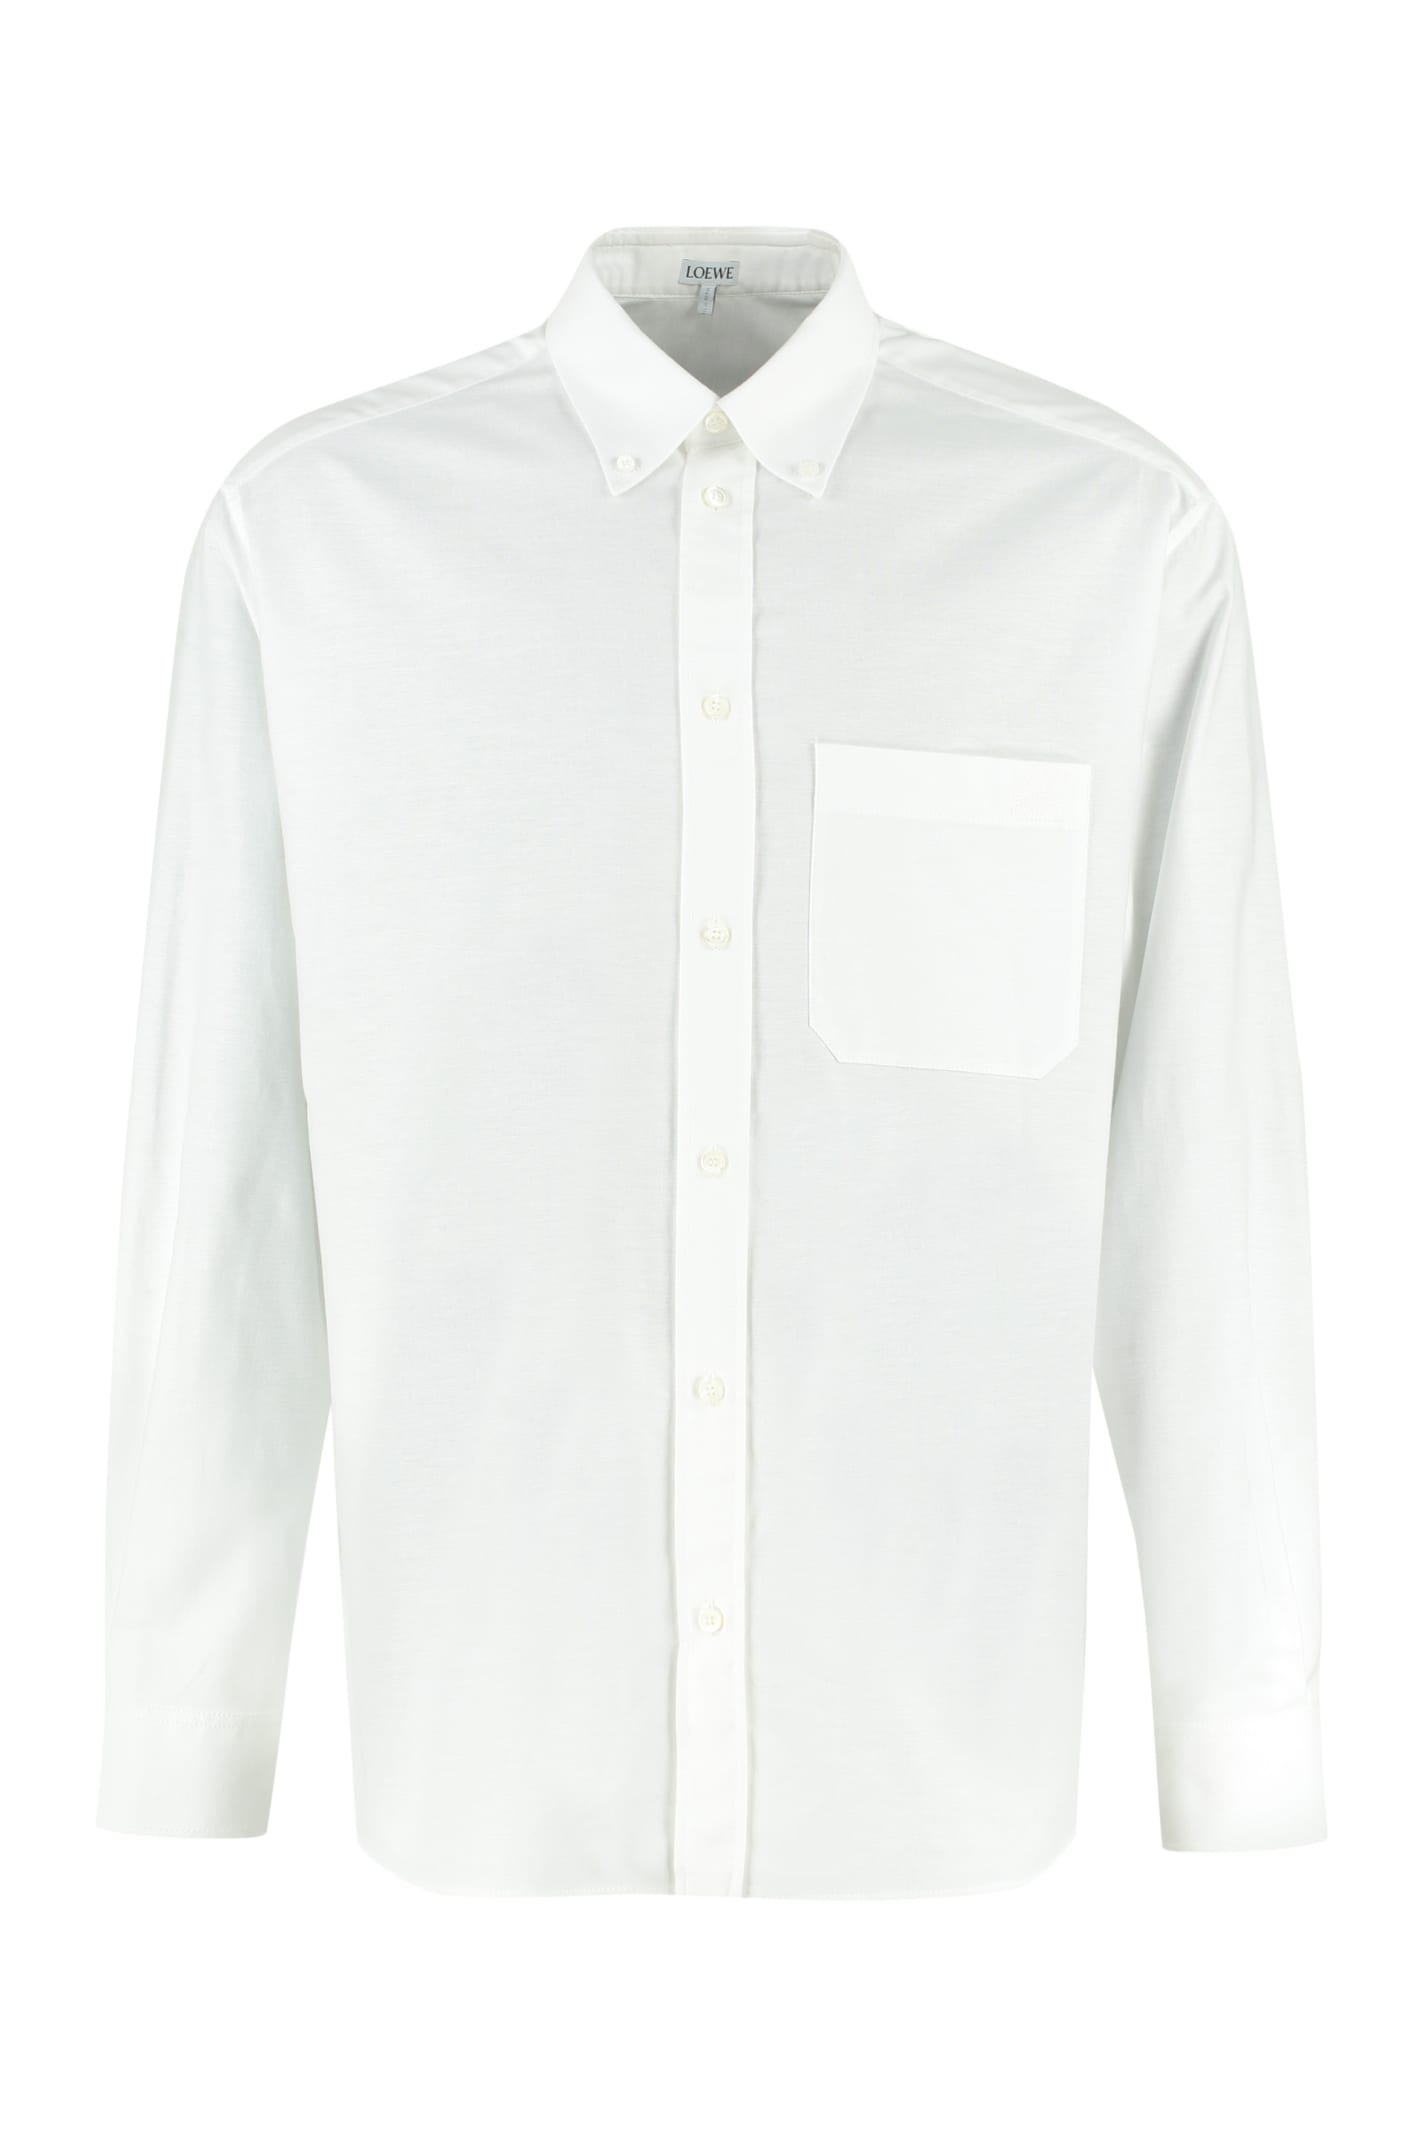 Loewe Cotton-oxford Shirt